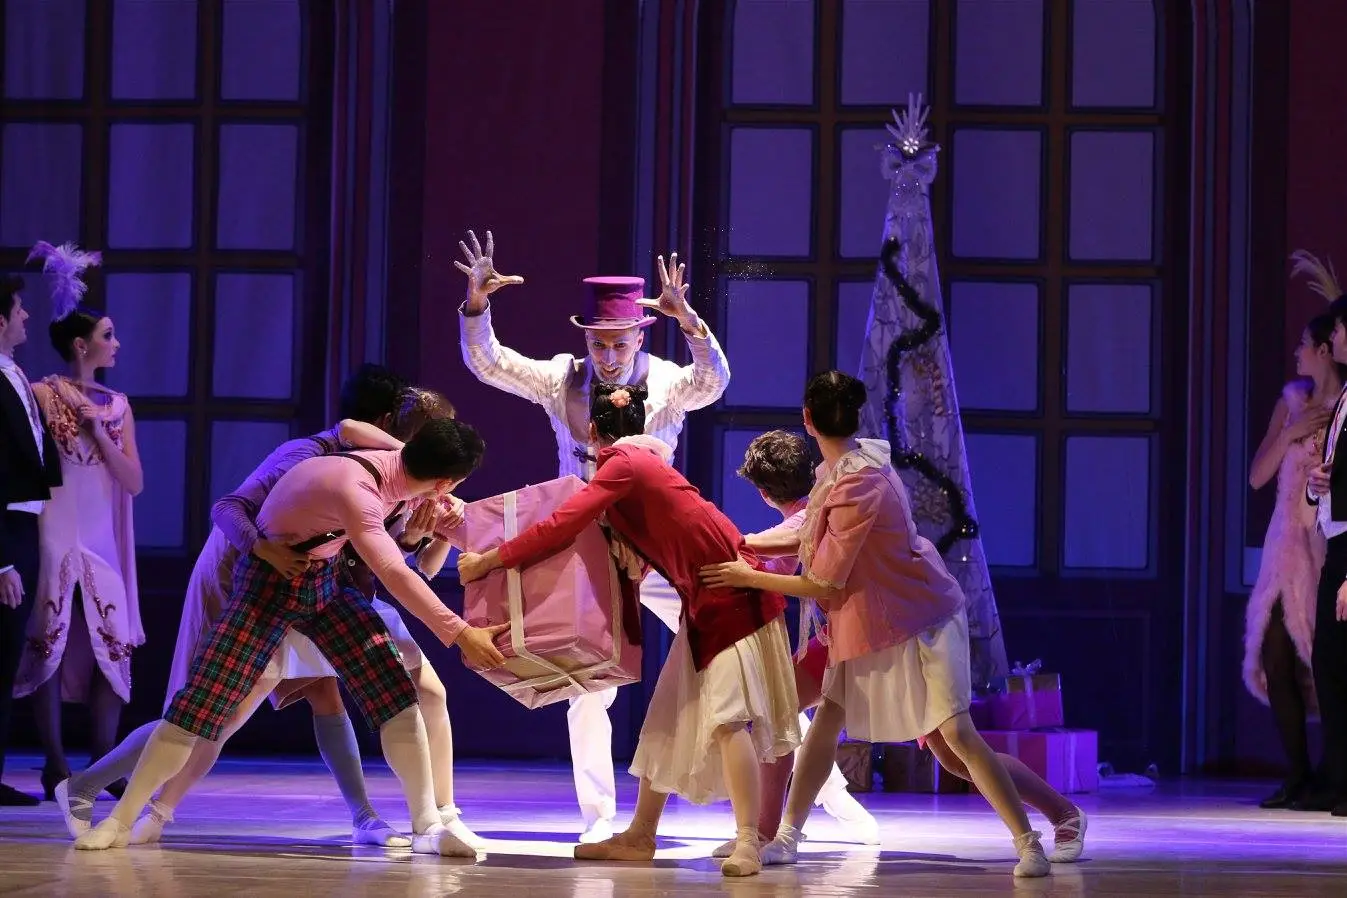 Teatro Verdi Montecatini: lu 26 dic Il balletto natalizio per eccellenza “Lo Schiaccianoci” attualizzato agli Anni Venti